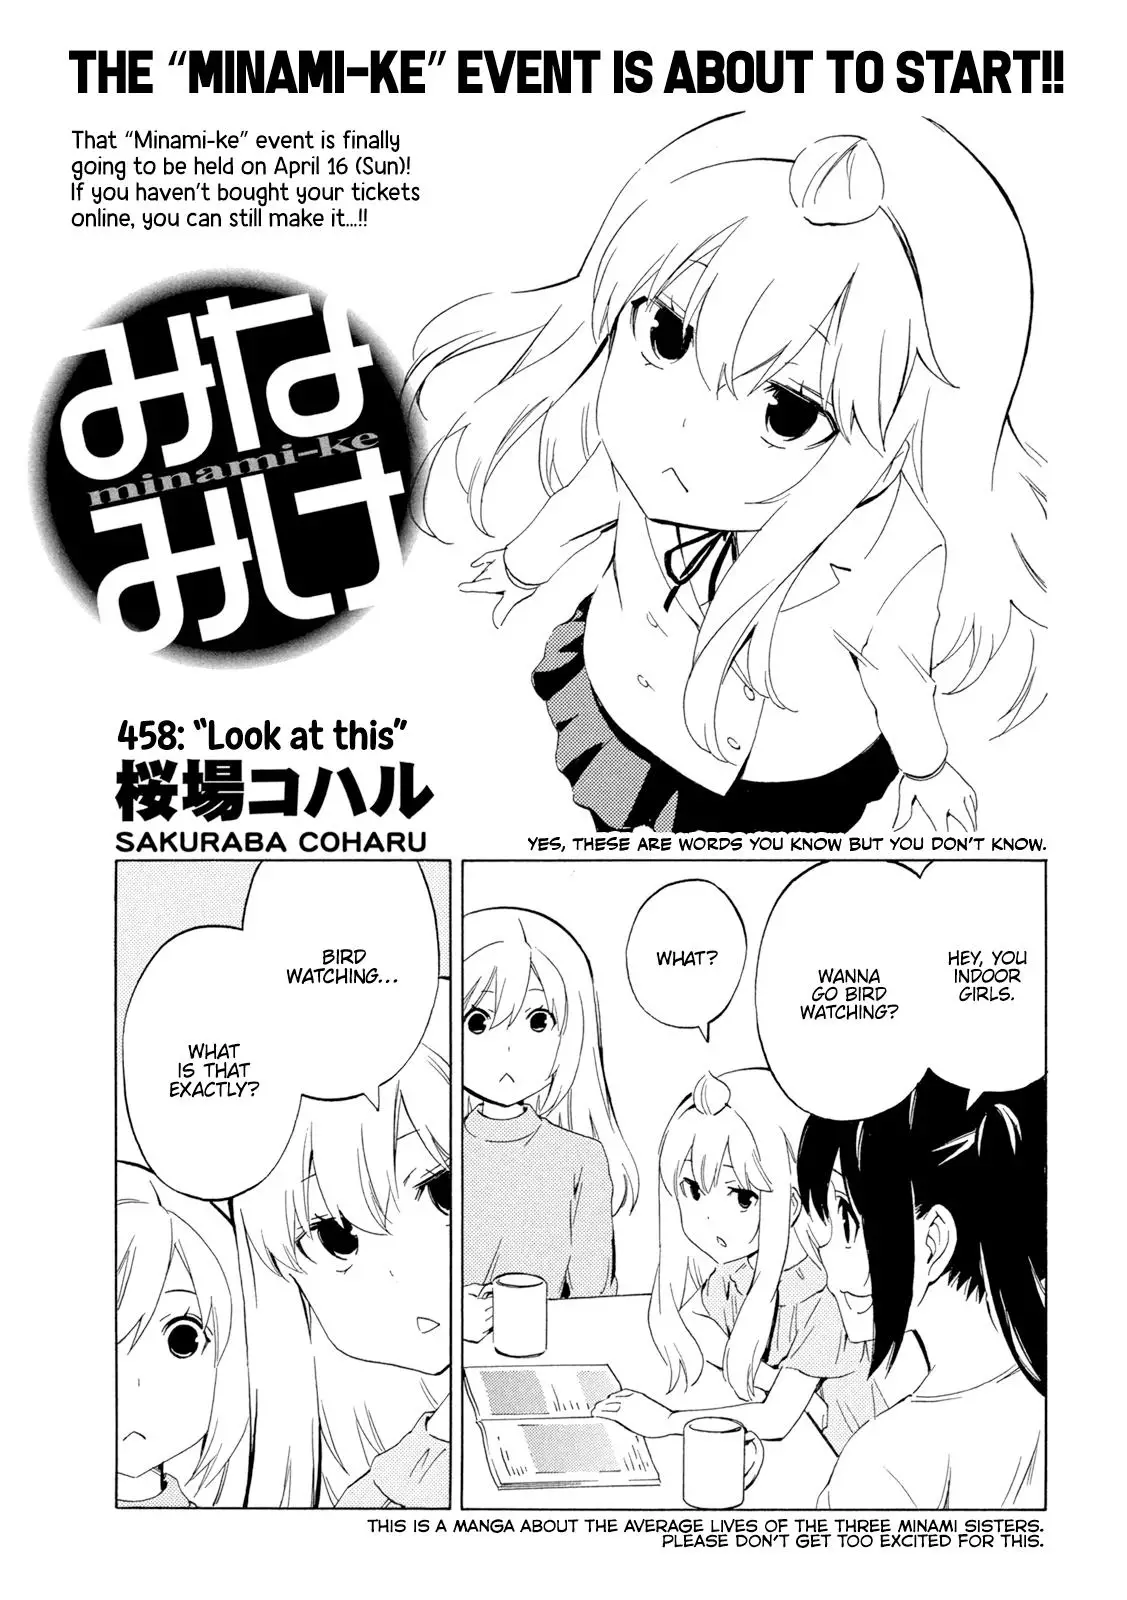 Minami-ke - 458 page 1-d99876c5